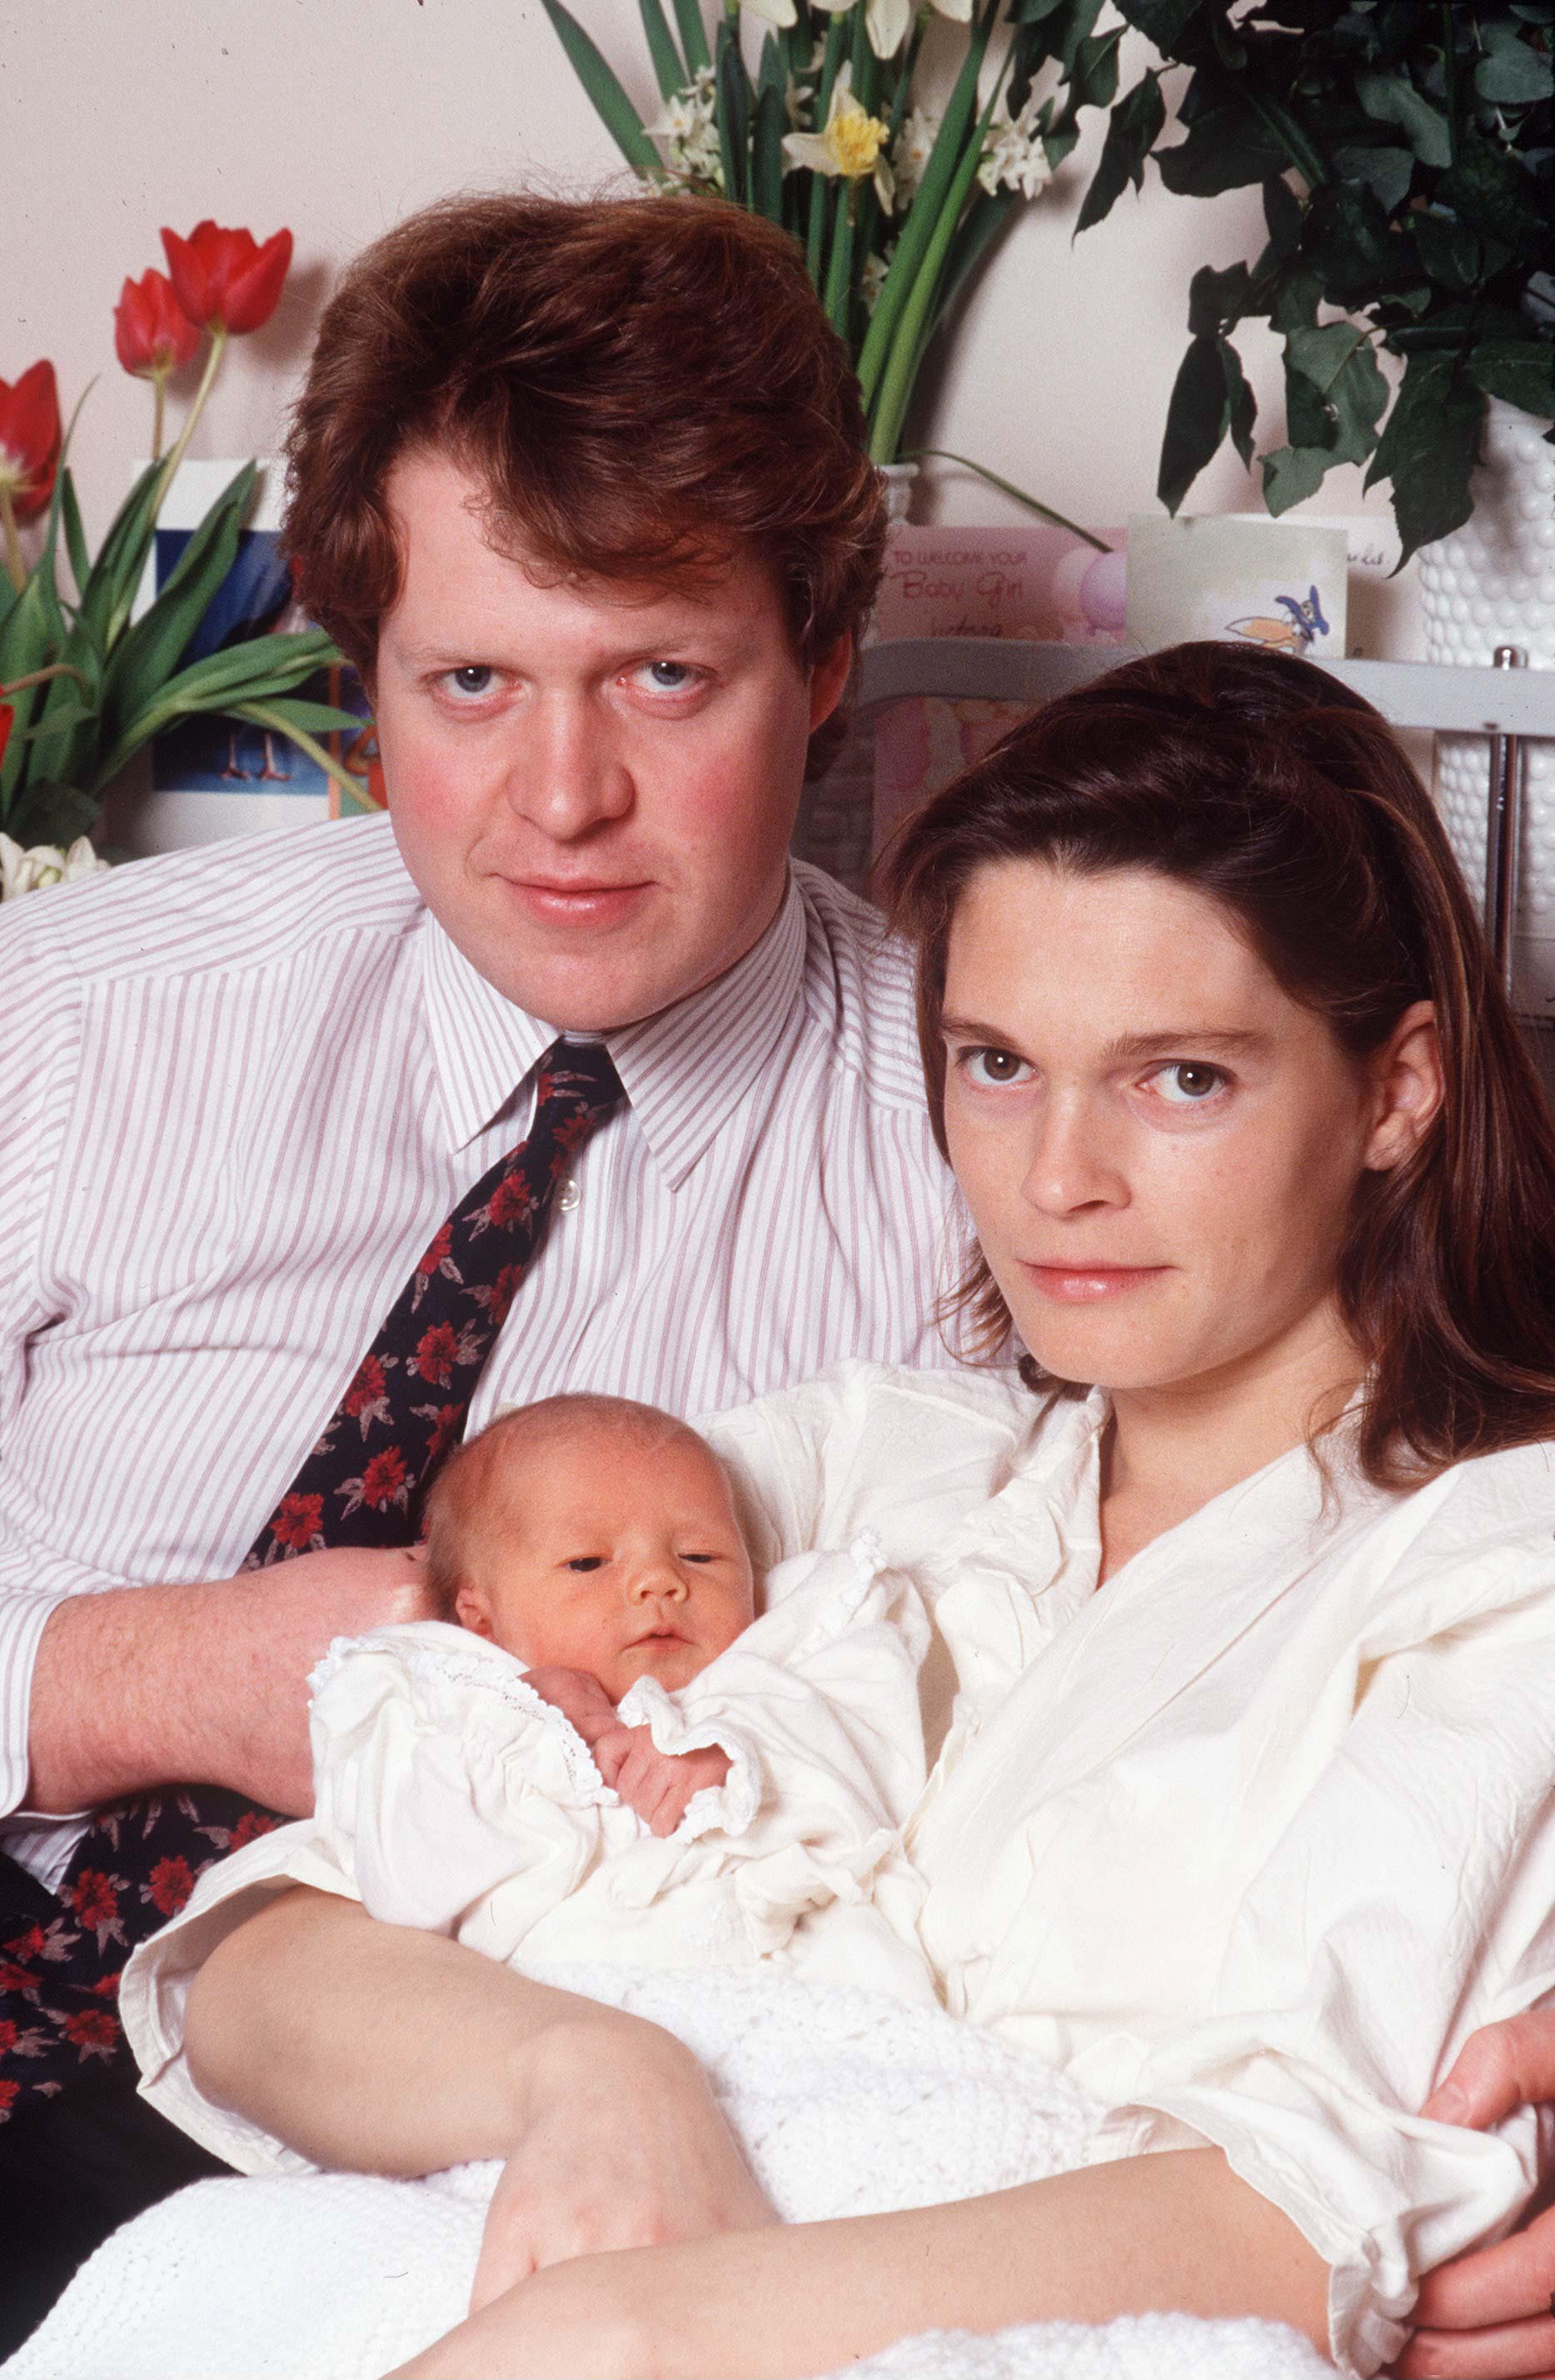 Le vicomte Althorp (comte Spencer) et Victoria Spencer avec leur fille Kitty Eleanor à l'hôpital St. Mary à Paddington, Londres | Source : Getty Images